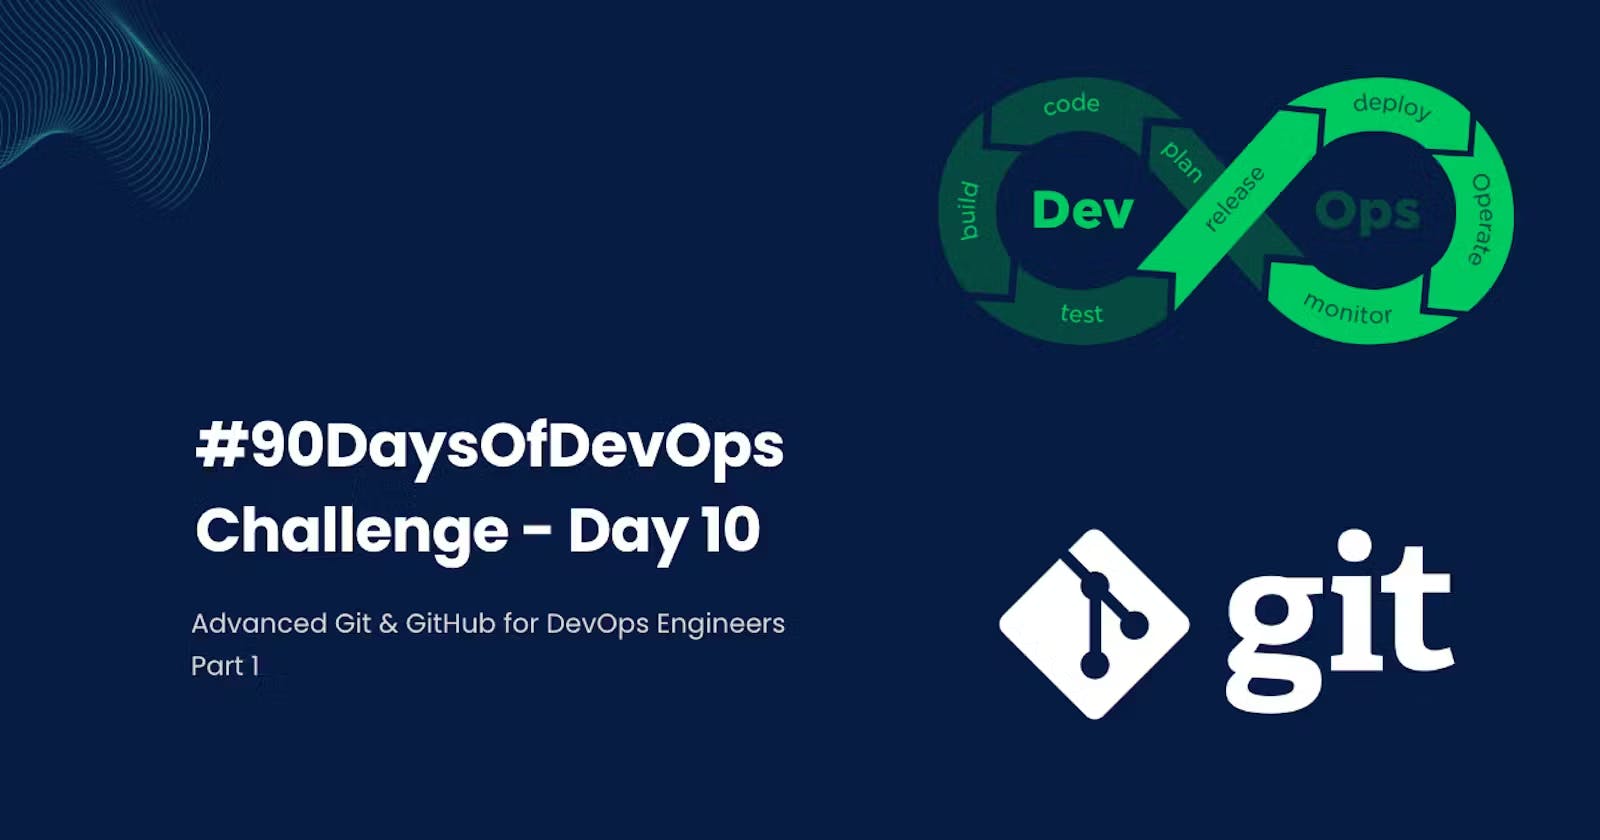 Day 10 Task: Advance Git & GitHub for DevOps Engineers